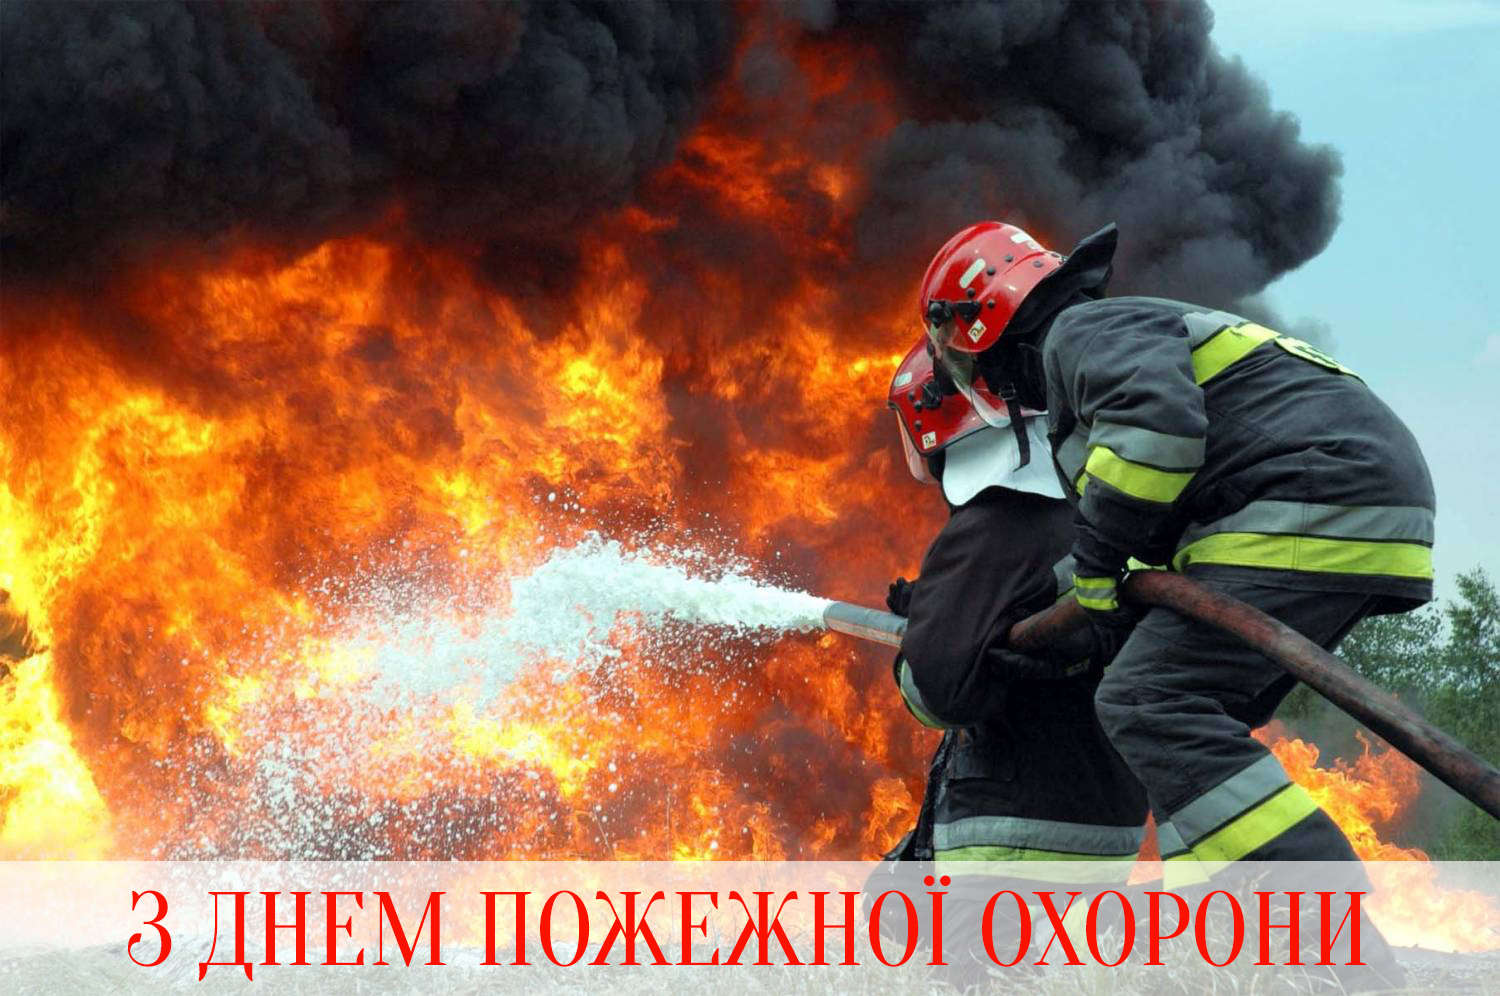 Сьогодні професійне свято відзначають українські пожежники